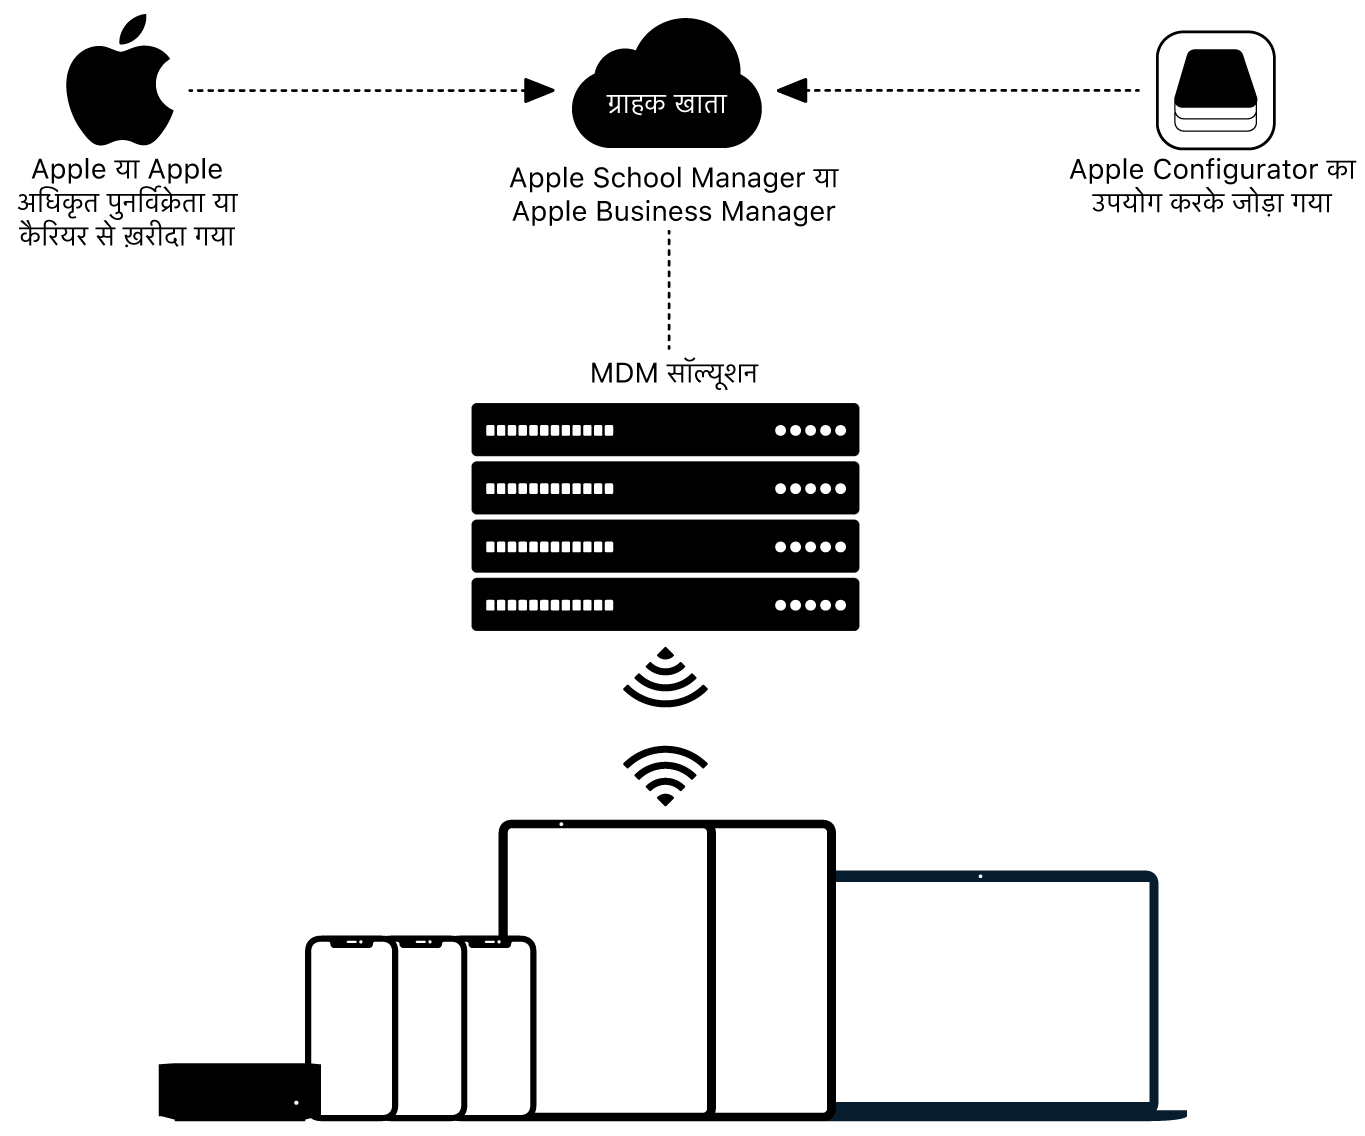 यह दिखाने वाला डायग्राम कि Apple School Manager या Apple Business Manager को डिवाइस कैसे असाइन किए जाते हैं।